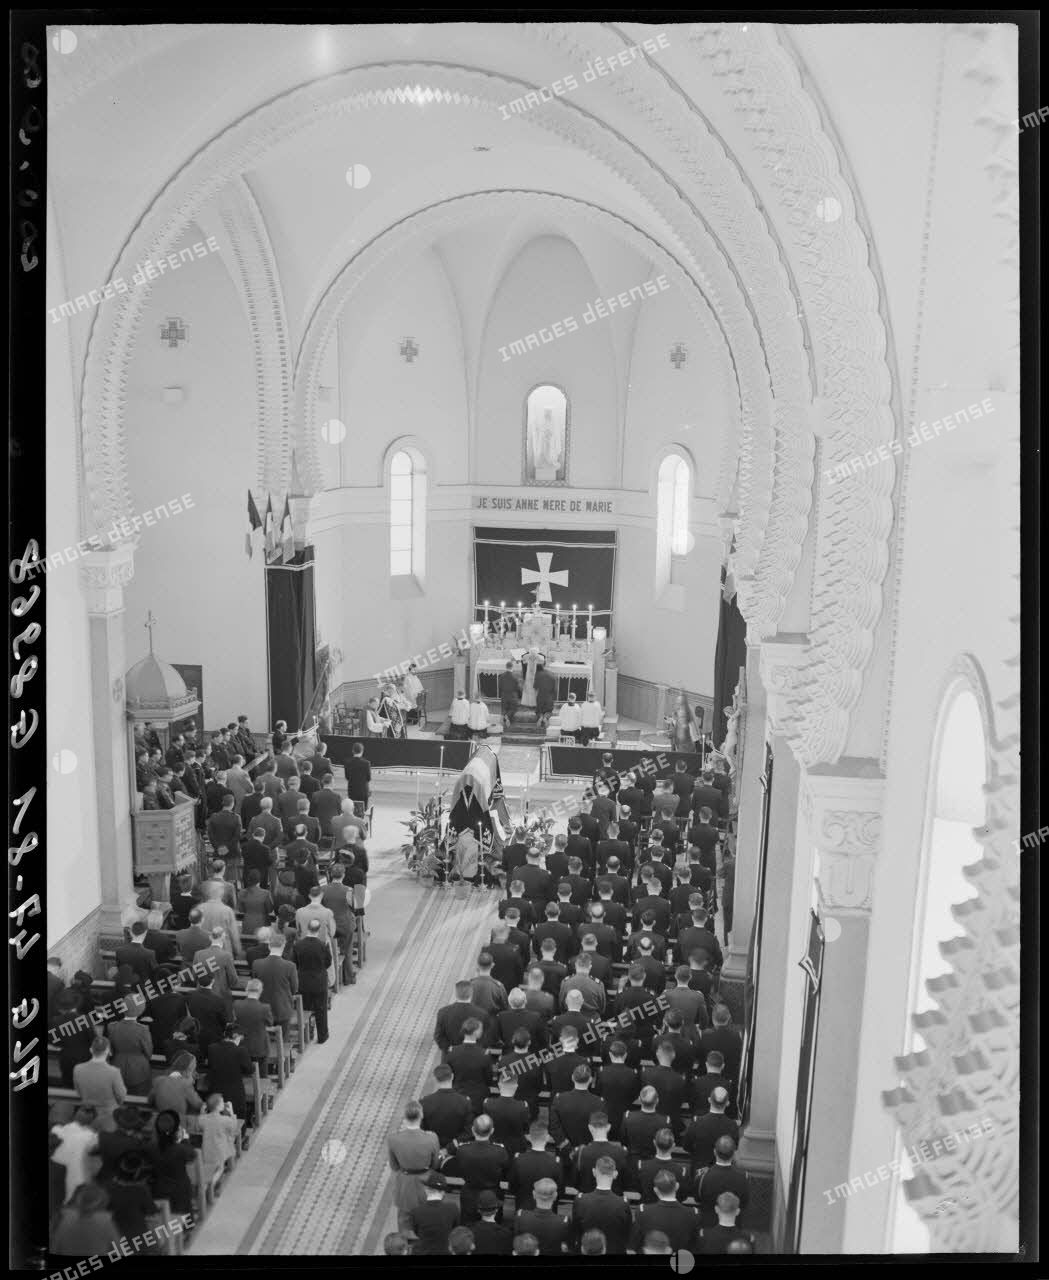 Plan en plongée de la cérémonie funéraire du général Philippe Leclerc, dans une église.